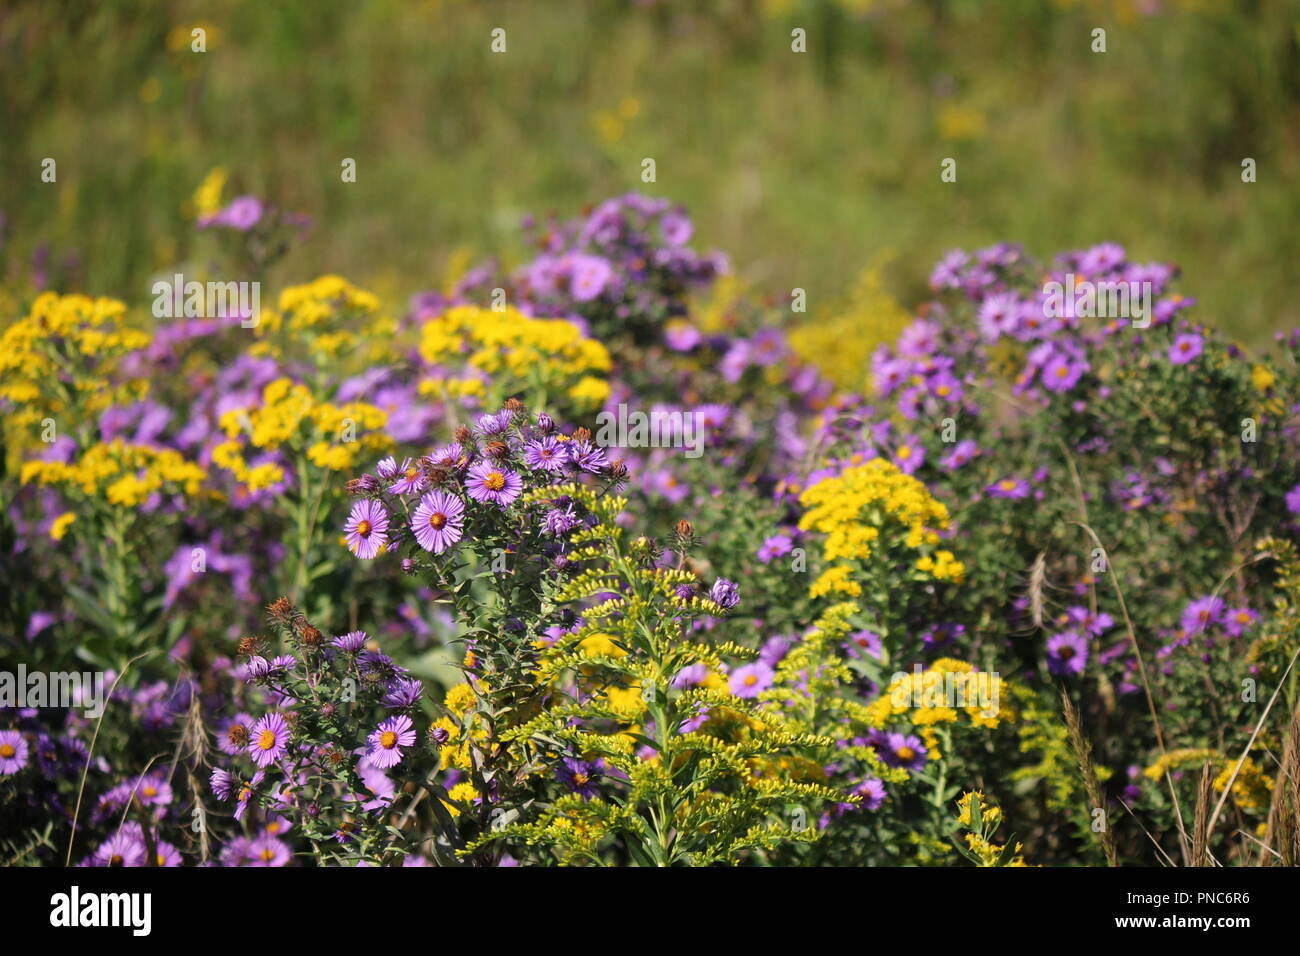 Magnifique champ de fleurs sauvages à la fin de l'été et au début de l' automne Photo Stock - Alamy